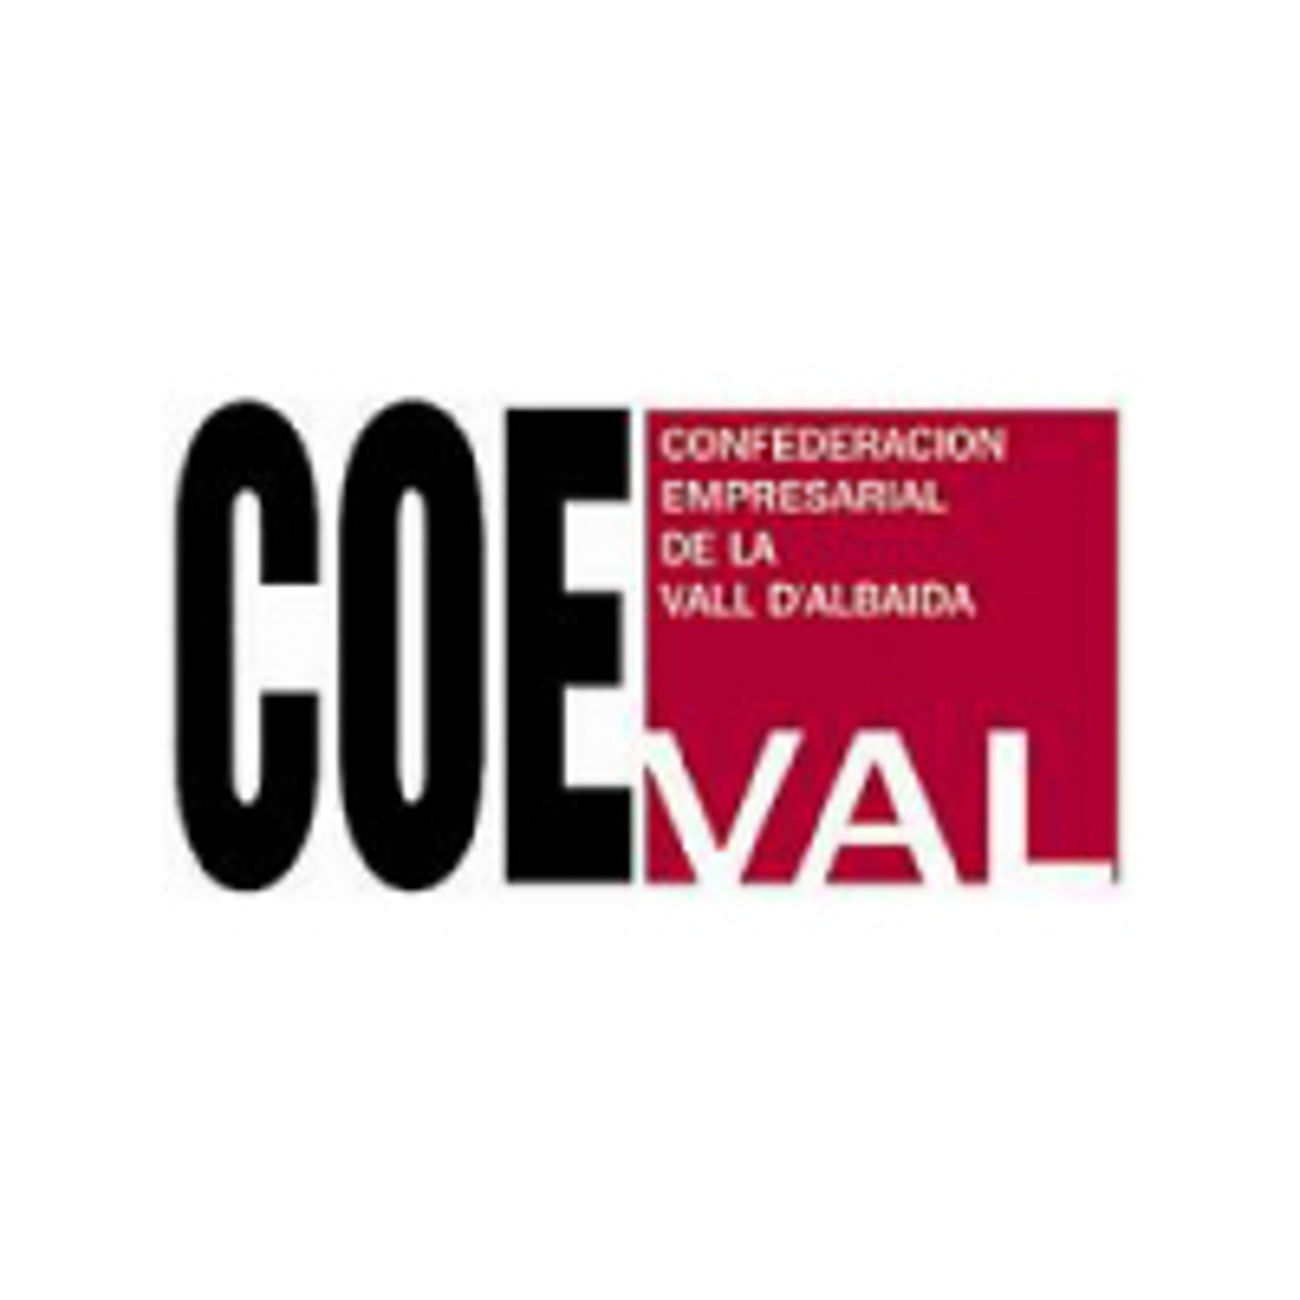 COEVAL, Confederación Empresarial de la Vall d'Albaida